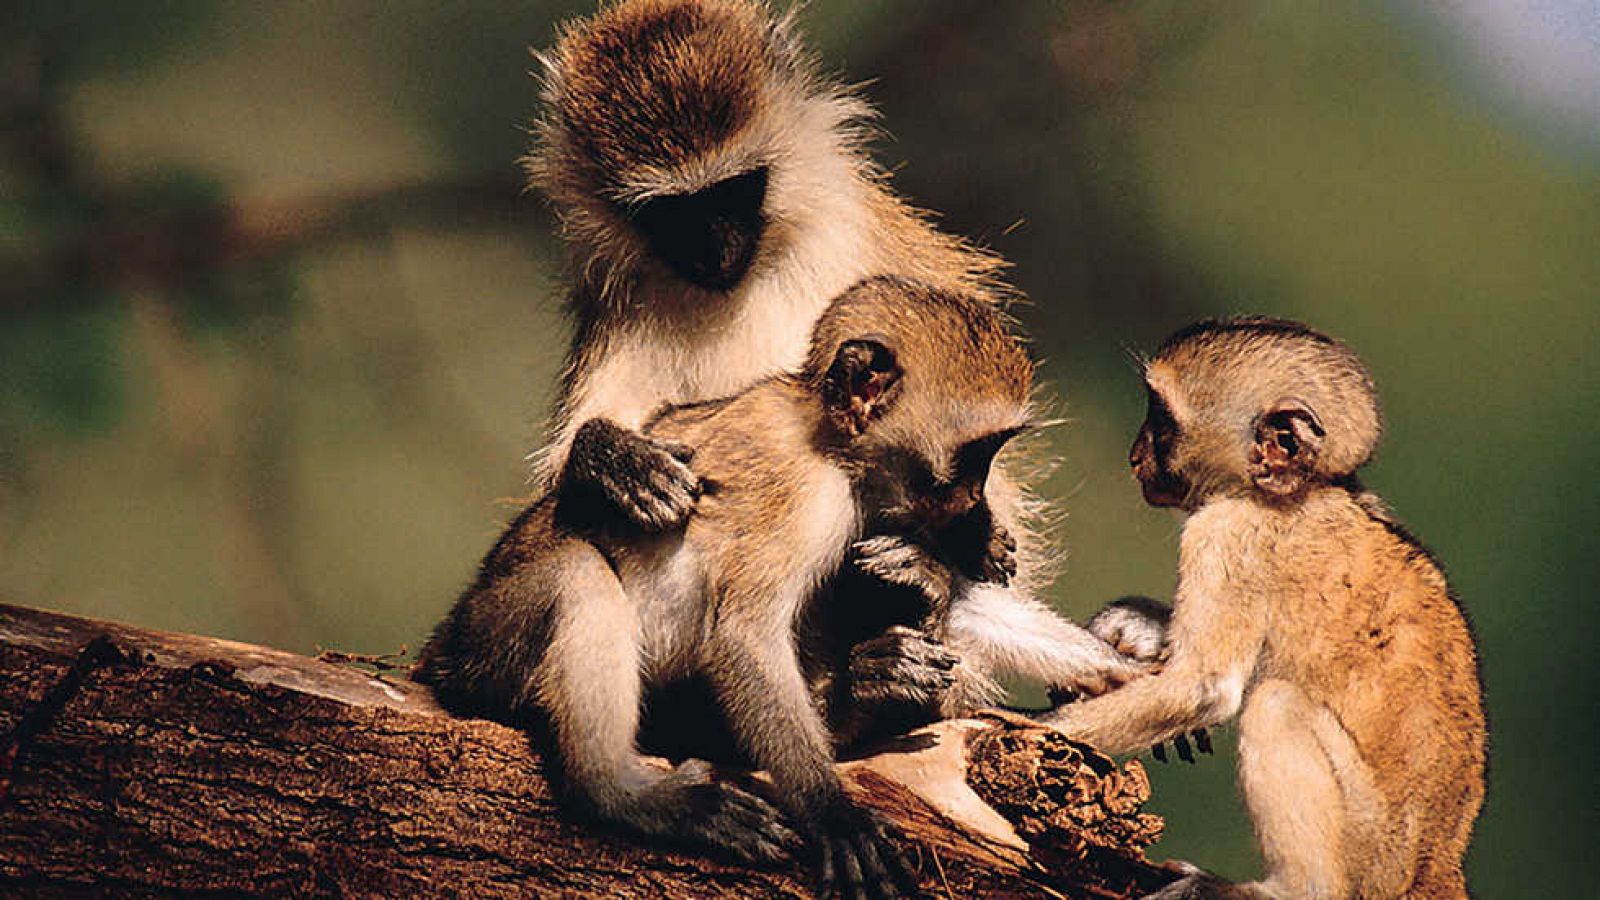 Grandes documentales - Descubriendo a los monos: Cerebros pensantes